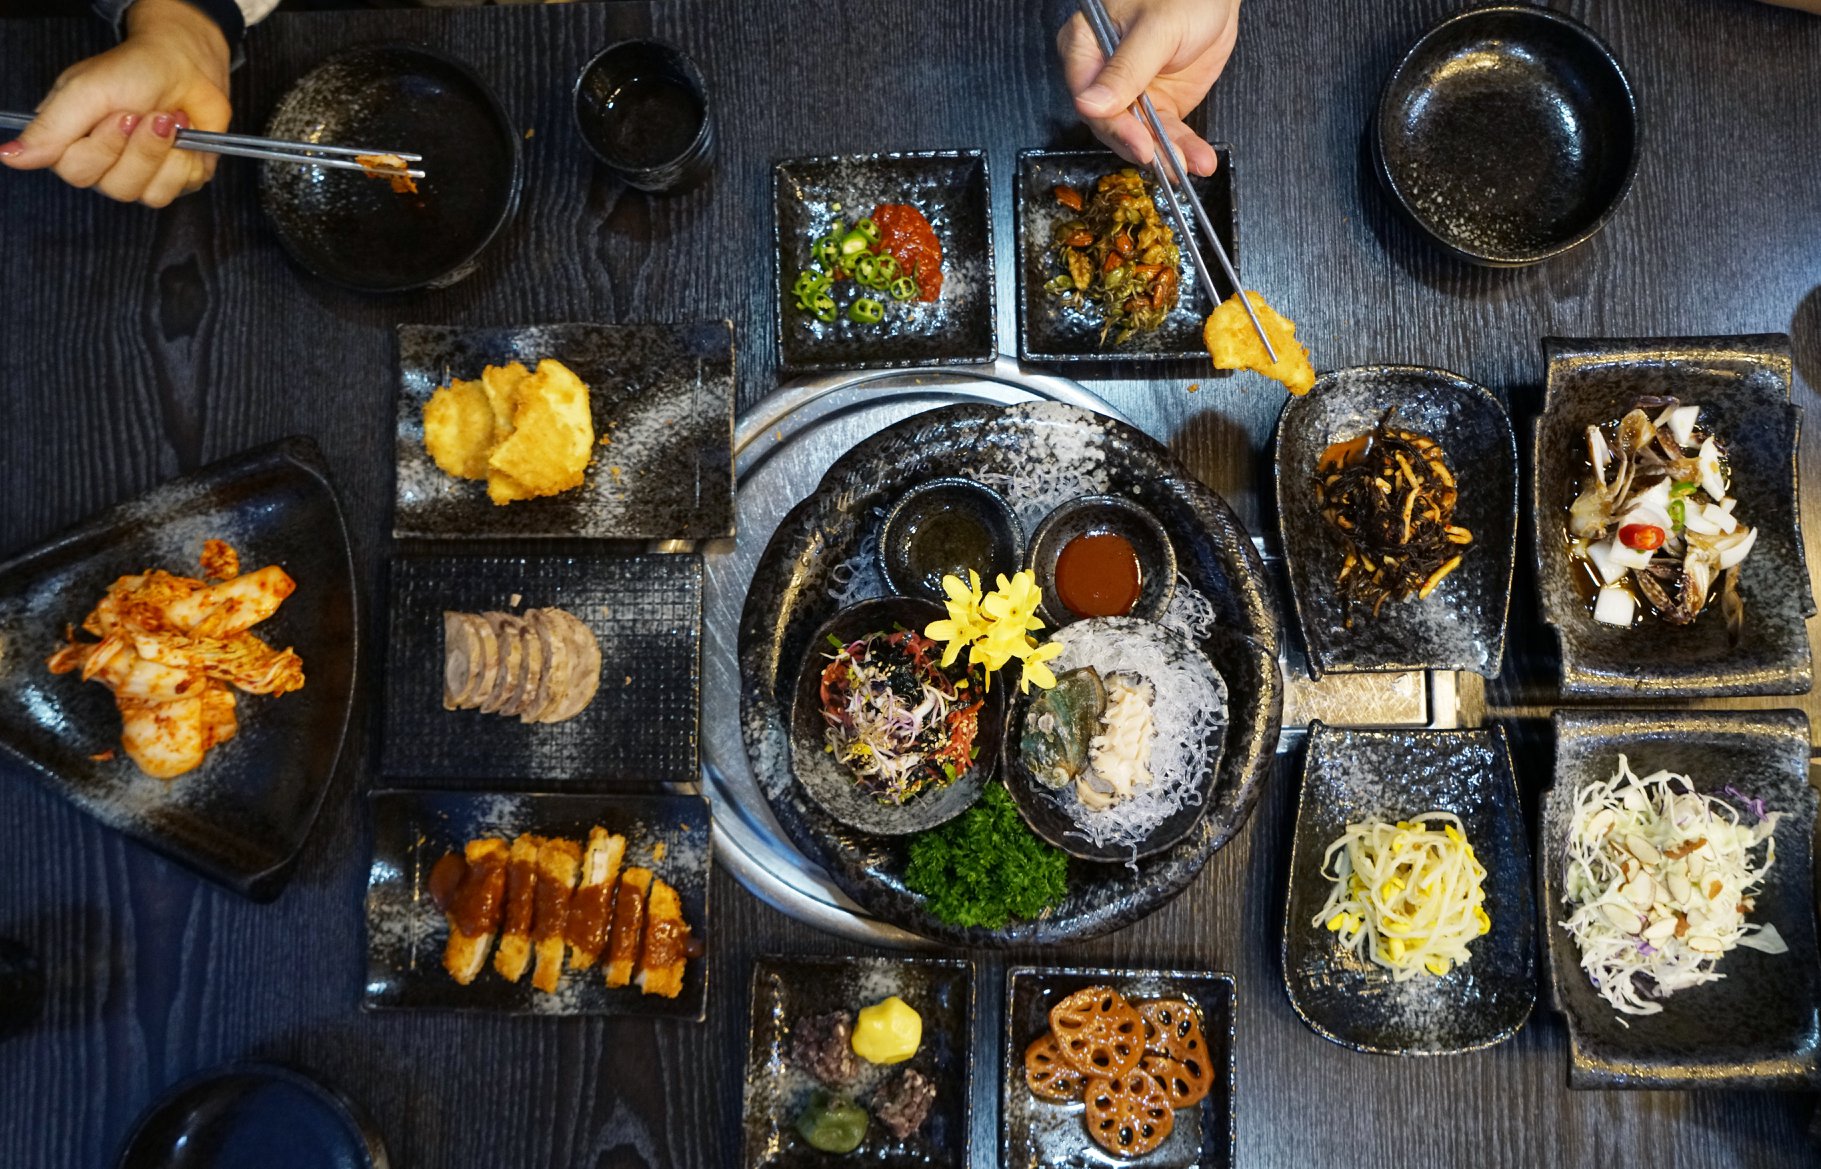 Trải nghiệm văn hóa qua nếp ăn của người Hàn - Nhà Có Hai Người